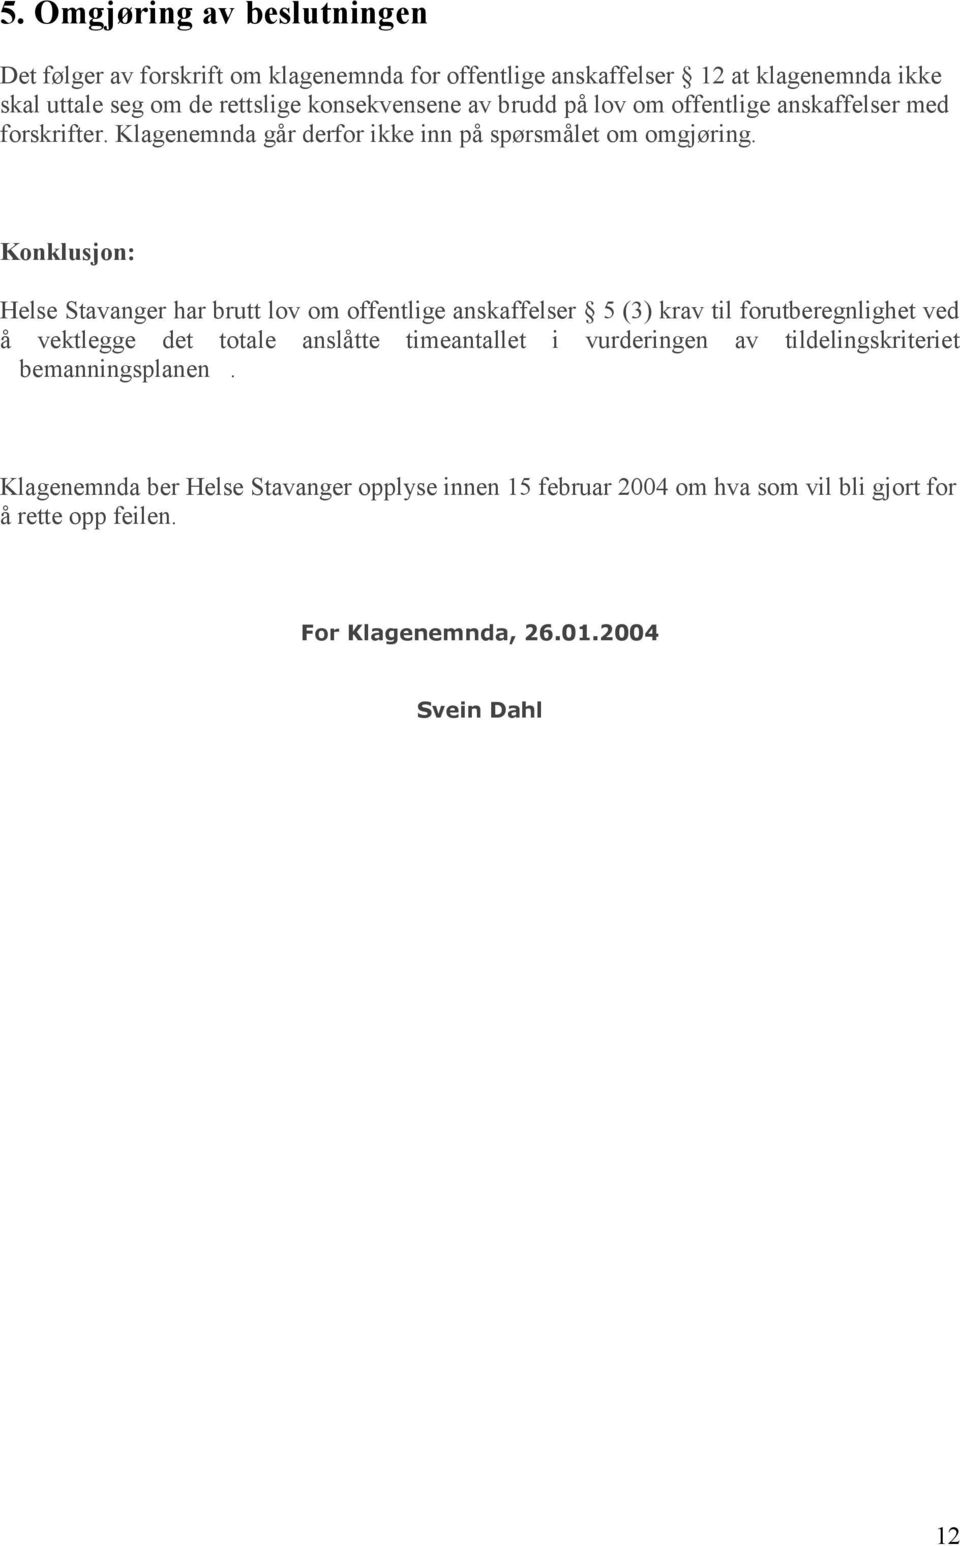 Konklusjon: Helse Stavanger har brutt lov om offentlige anskaffelser 5 (3) krav til forutberegnlighet ved å vektlegge det totale anslåtte timeantallet i